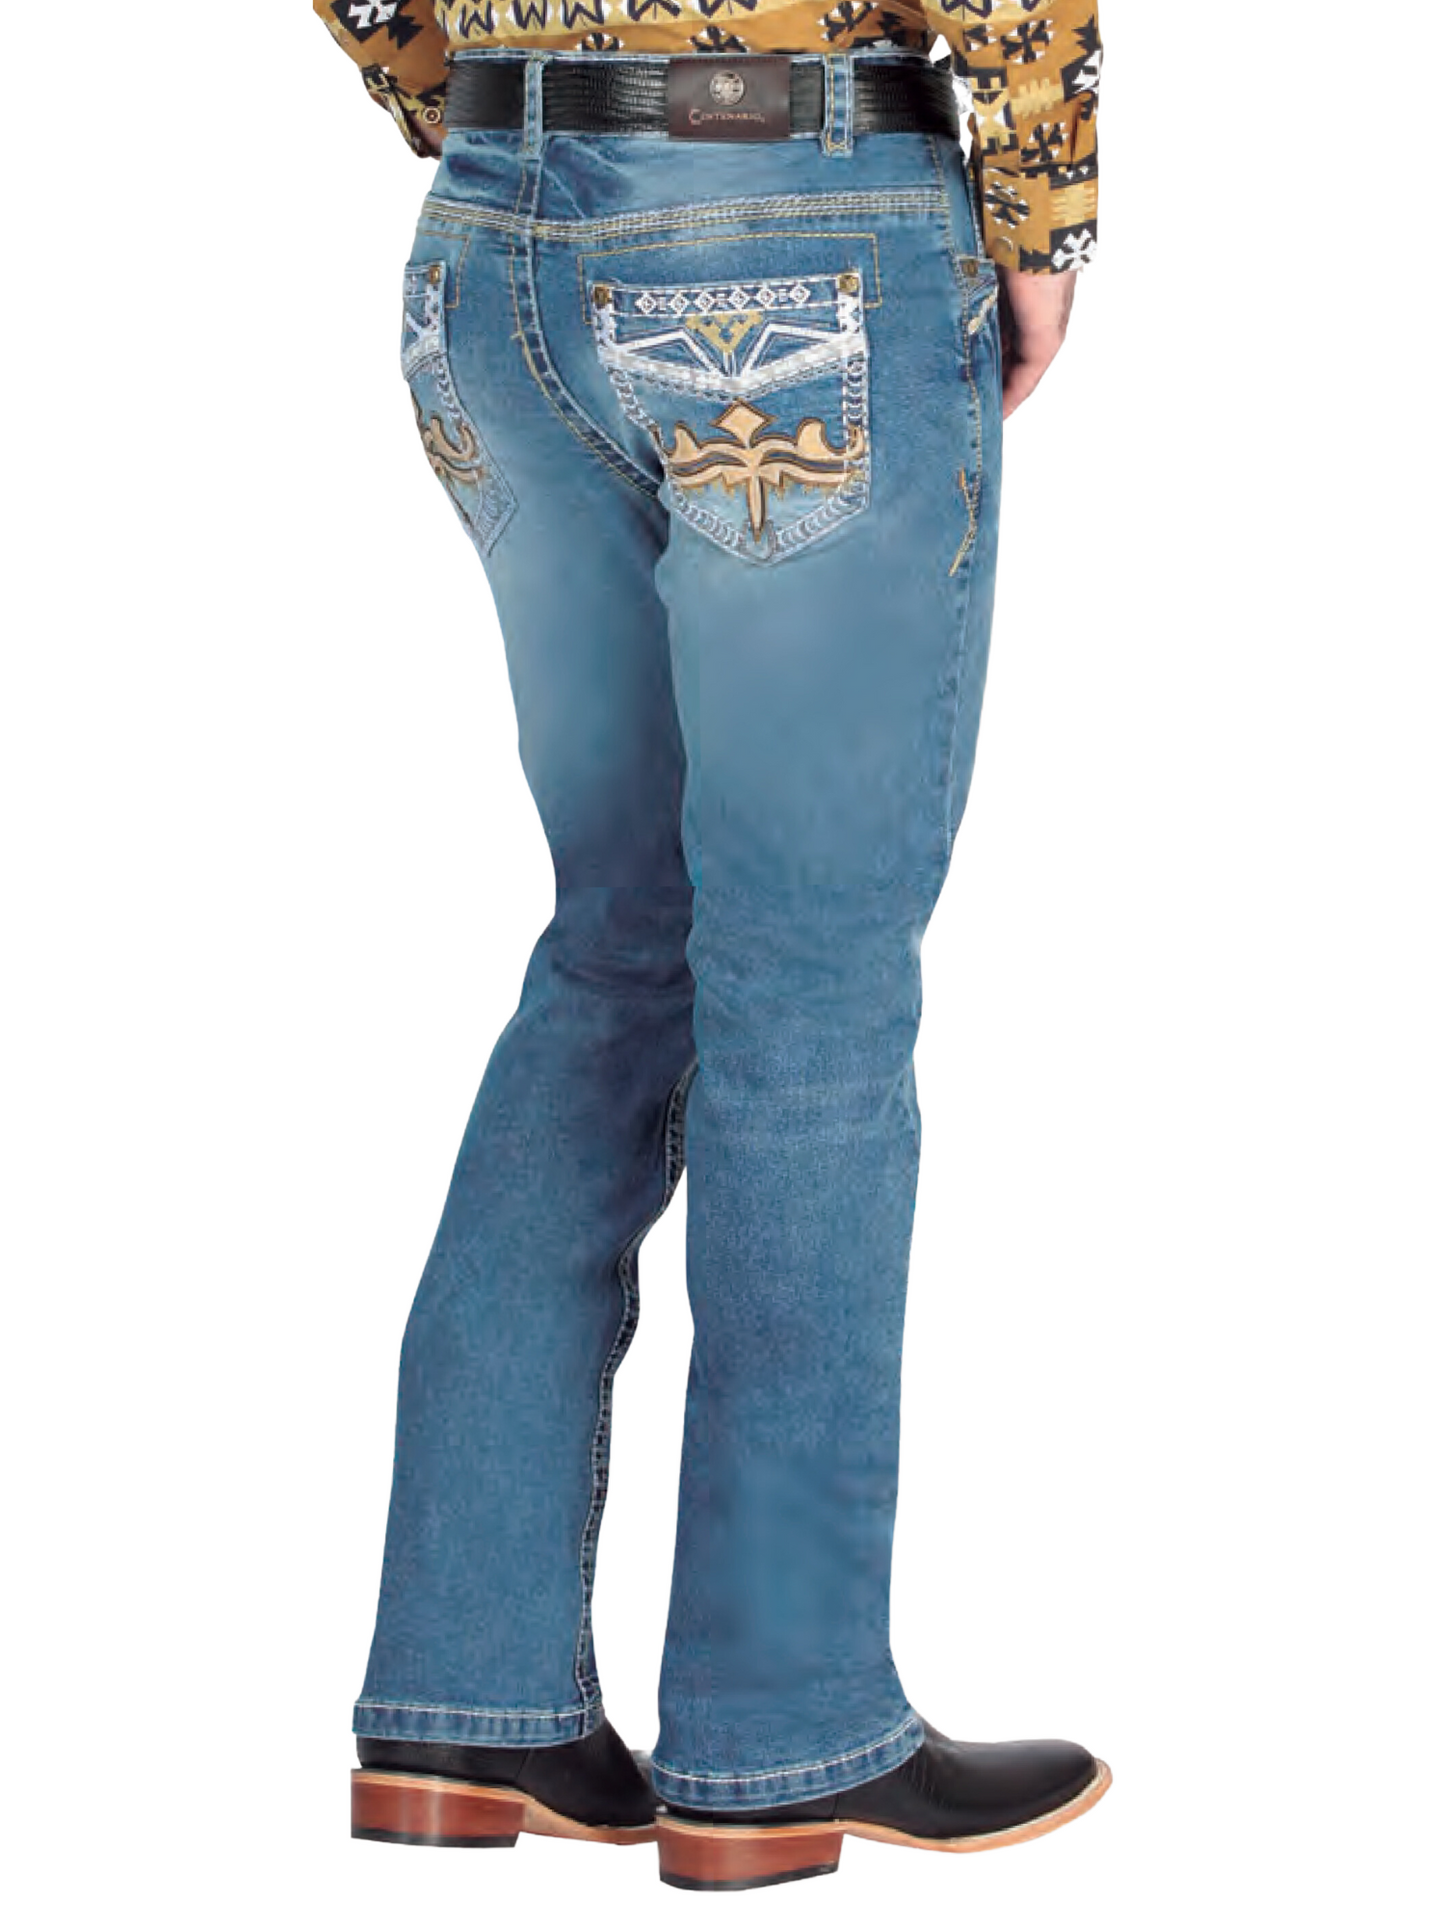 Pantalon Vaquero de Mezclilla Boot Cut Azul Claro para Hombre 'Centenario' - ID: 44839 Denim Jeans Centenario 